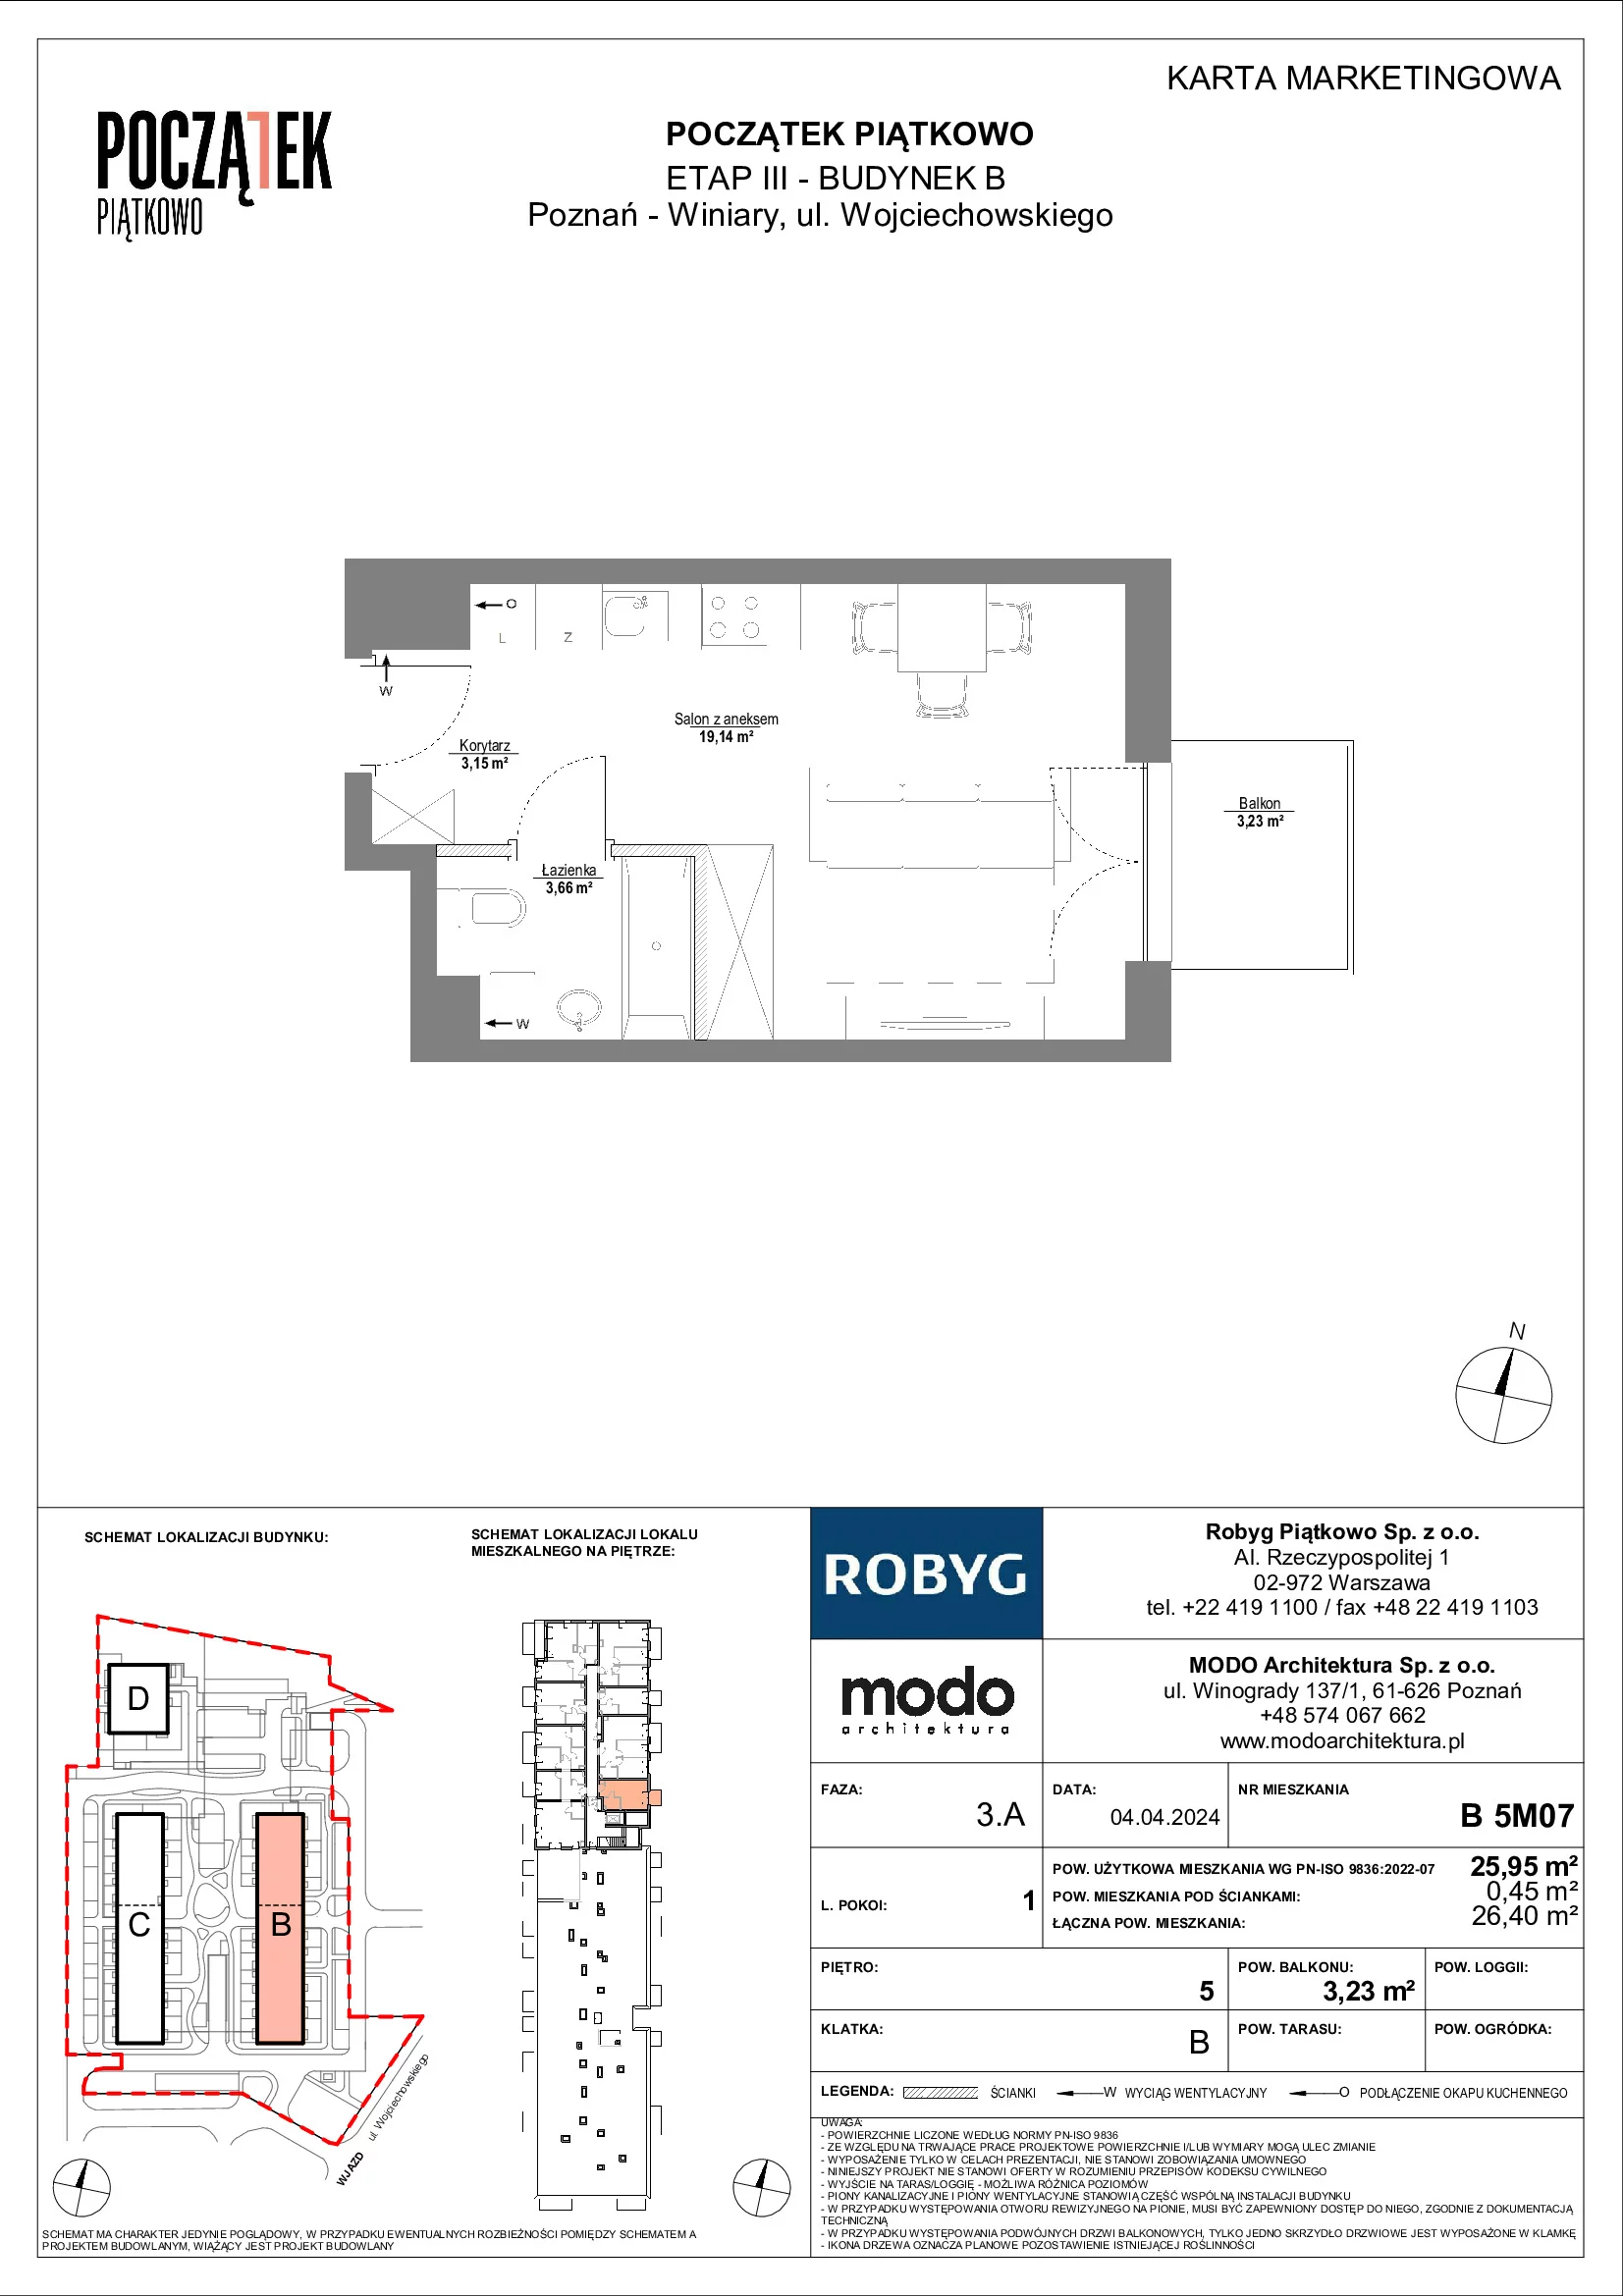 Mieszkanie 25,95 m², piętro 5, oferta nr B.5M07, Początek Piątkowo, Poznań, Piątkowo, ul. Wojciechowskiego